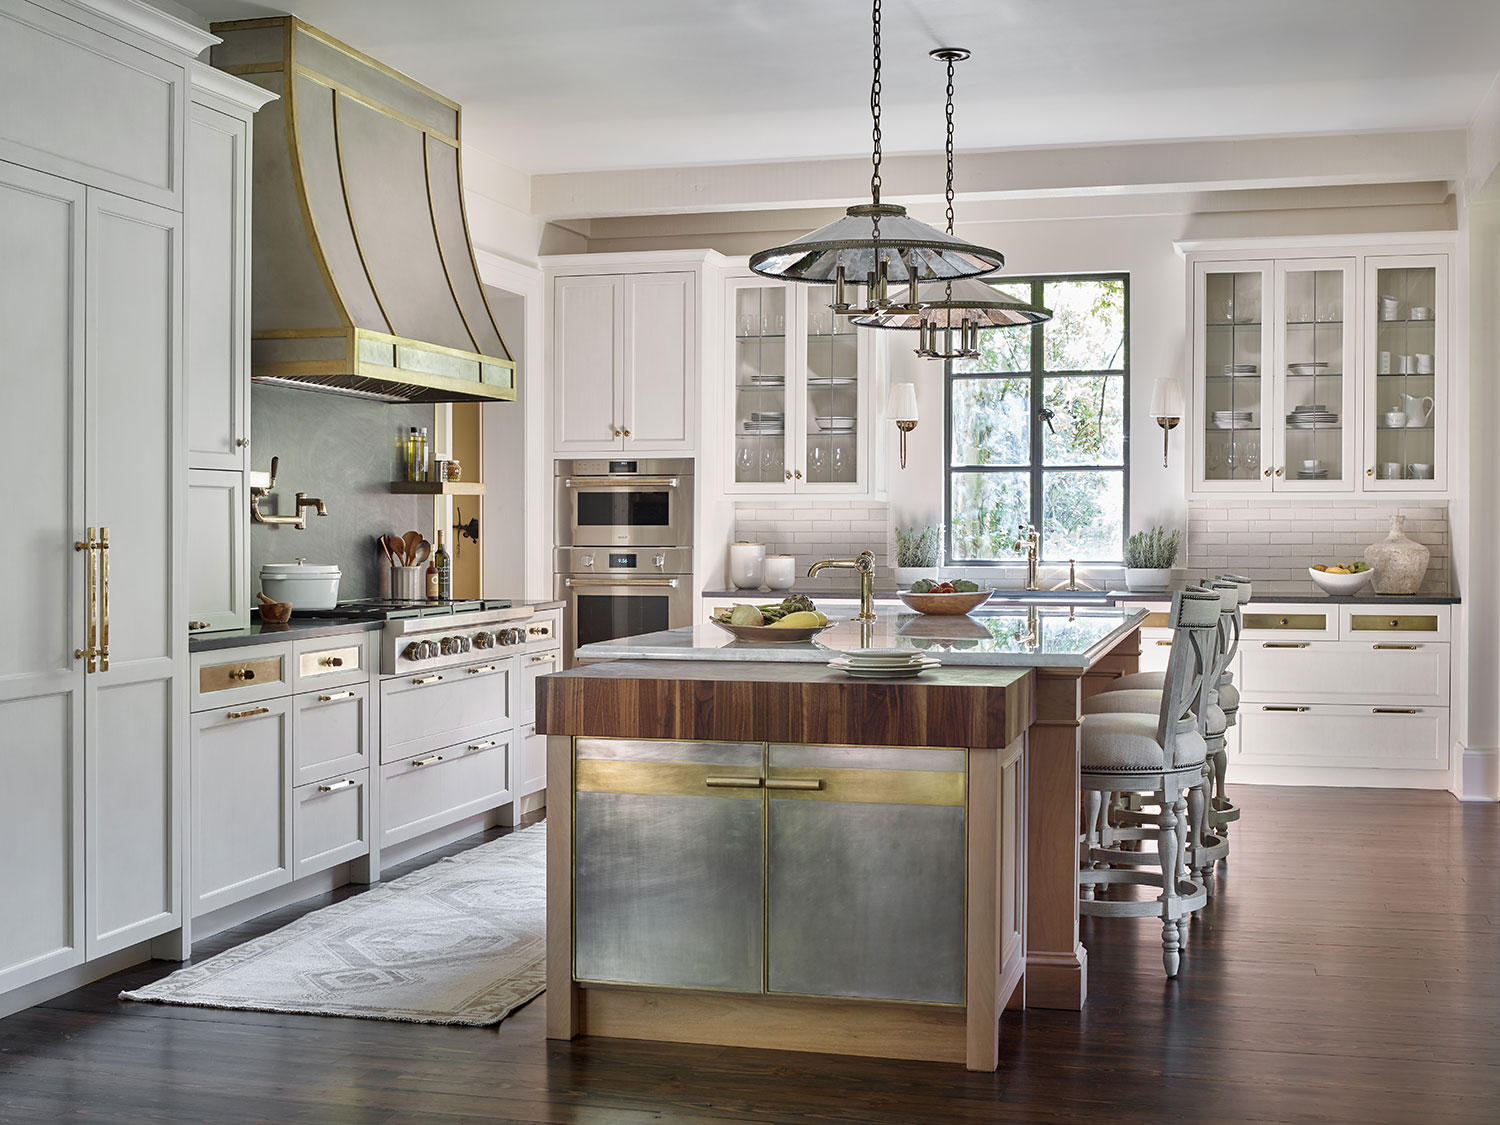 2022 kitchen designs white kitchen with brass and metallic accents by karen ferguson